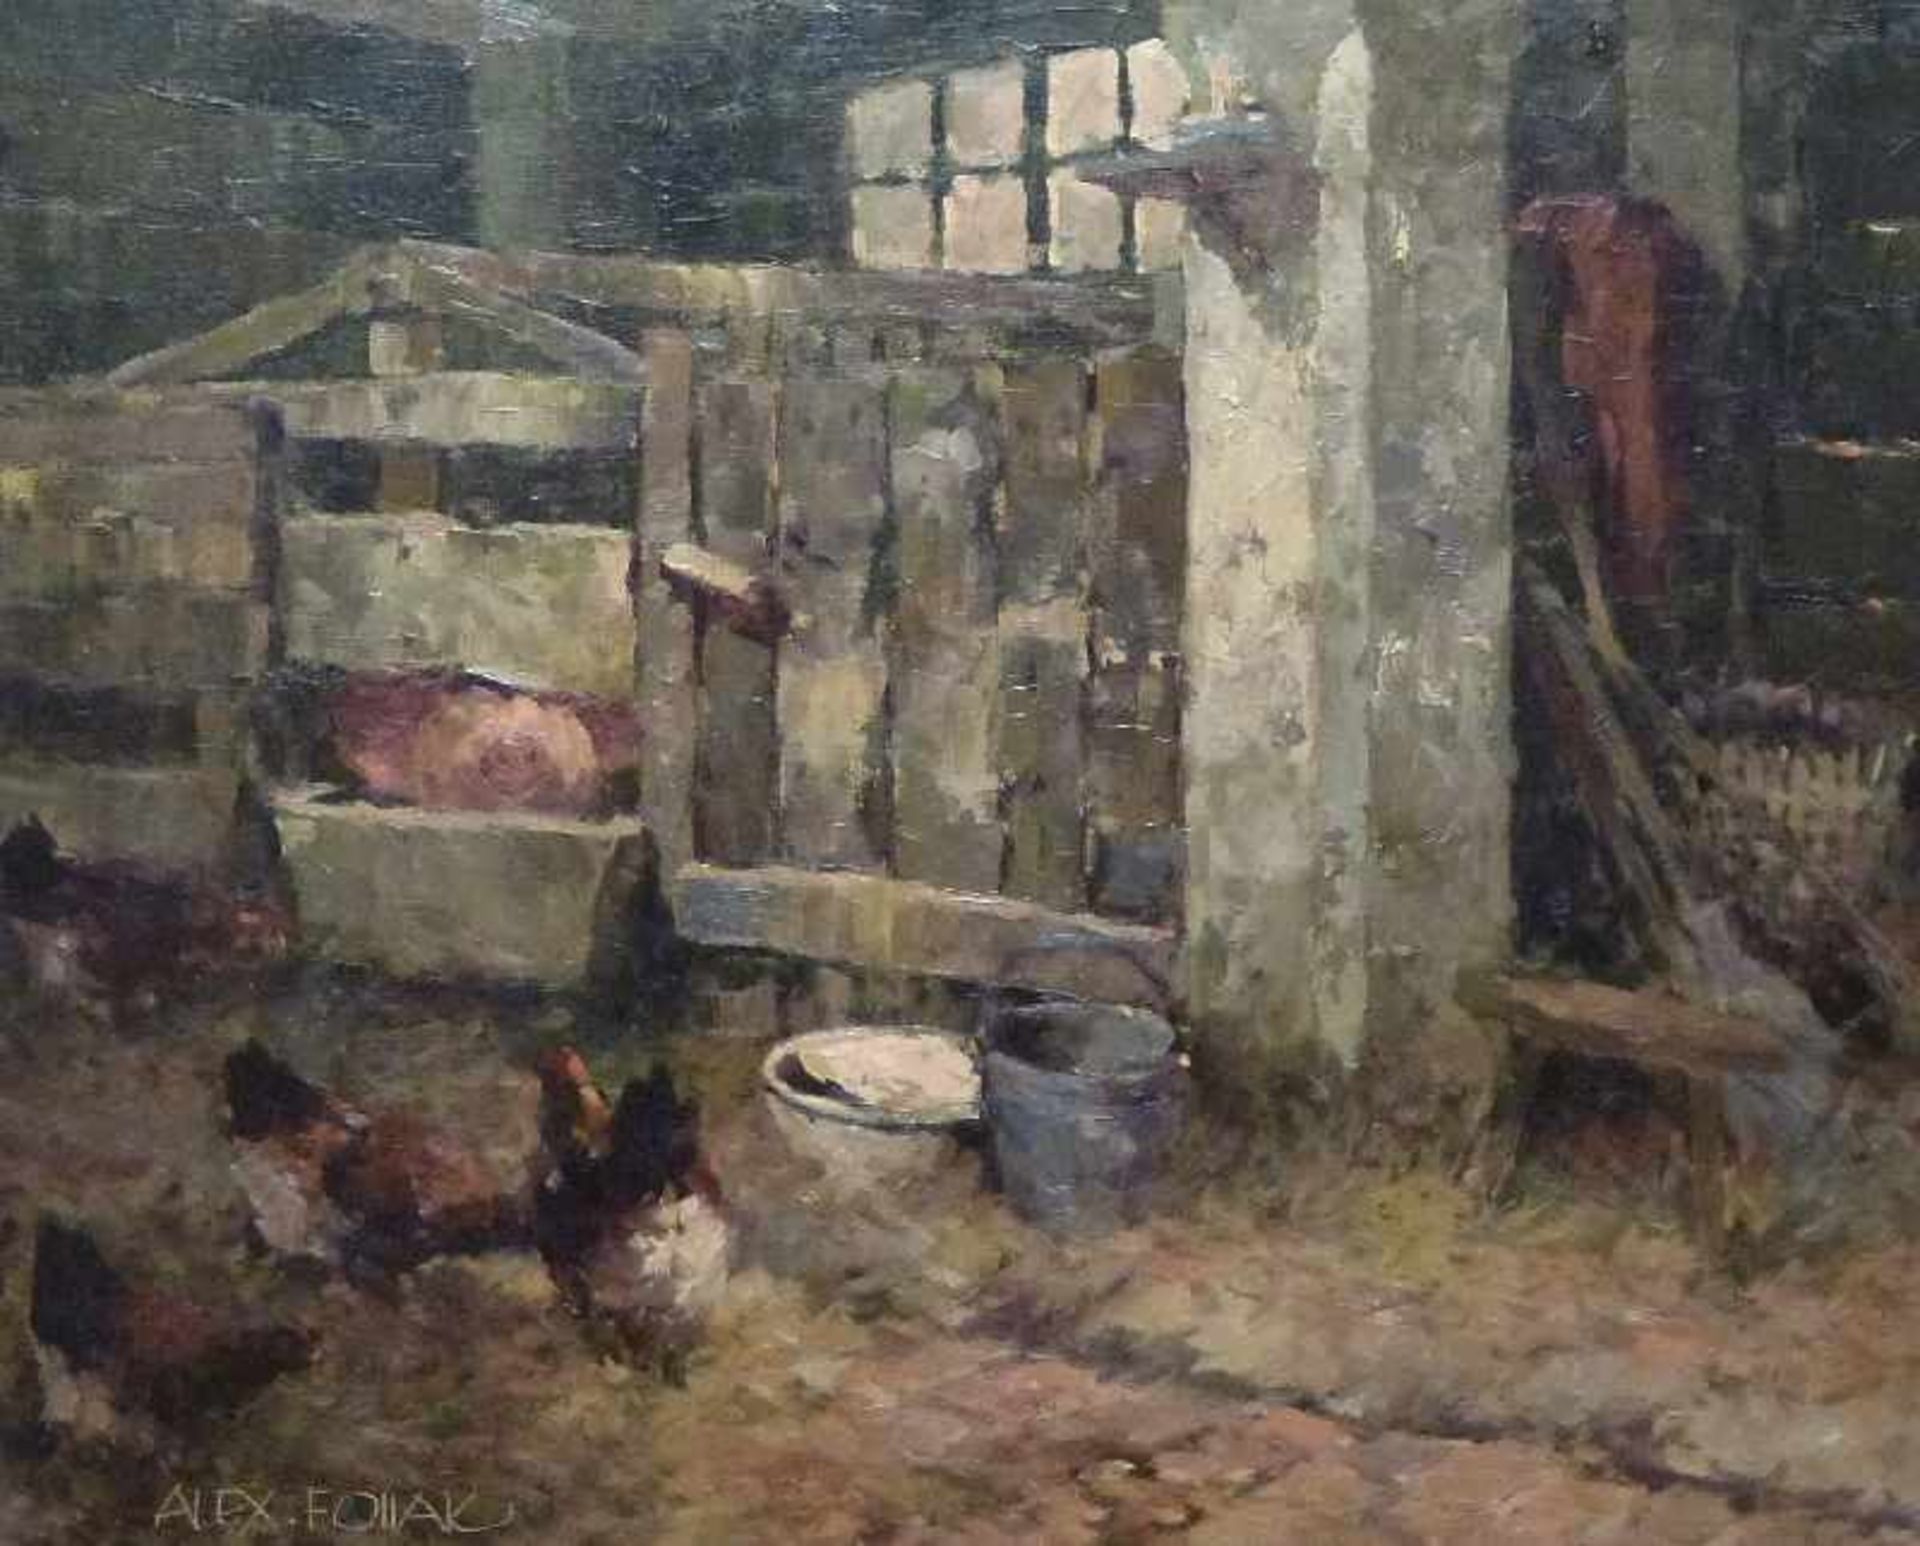 Stall, Alexander Follak (1915-2006) Öl/Lw, Hühner und Schwein im Stall, R, 50x61cm